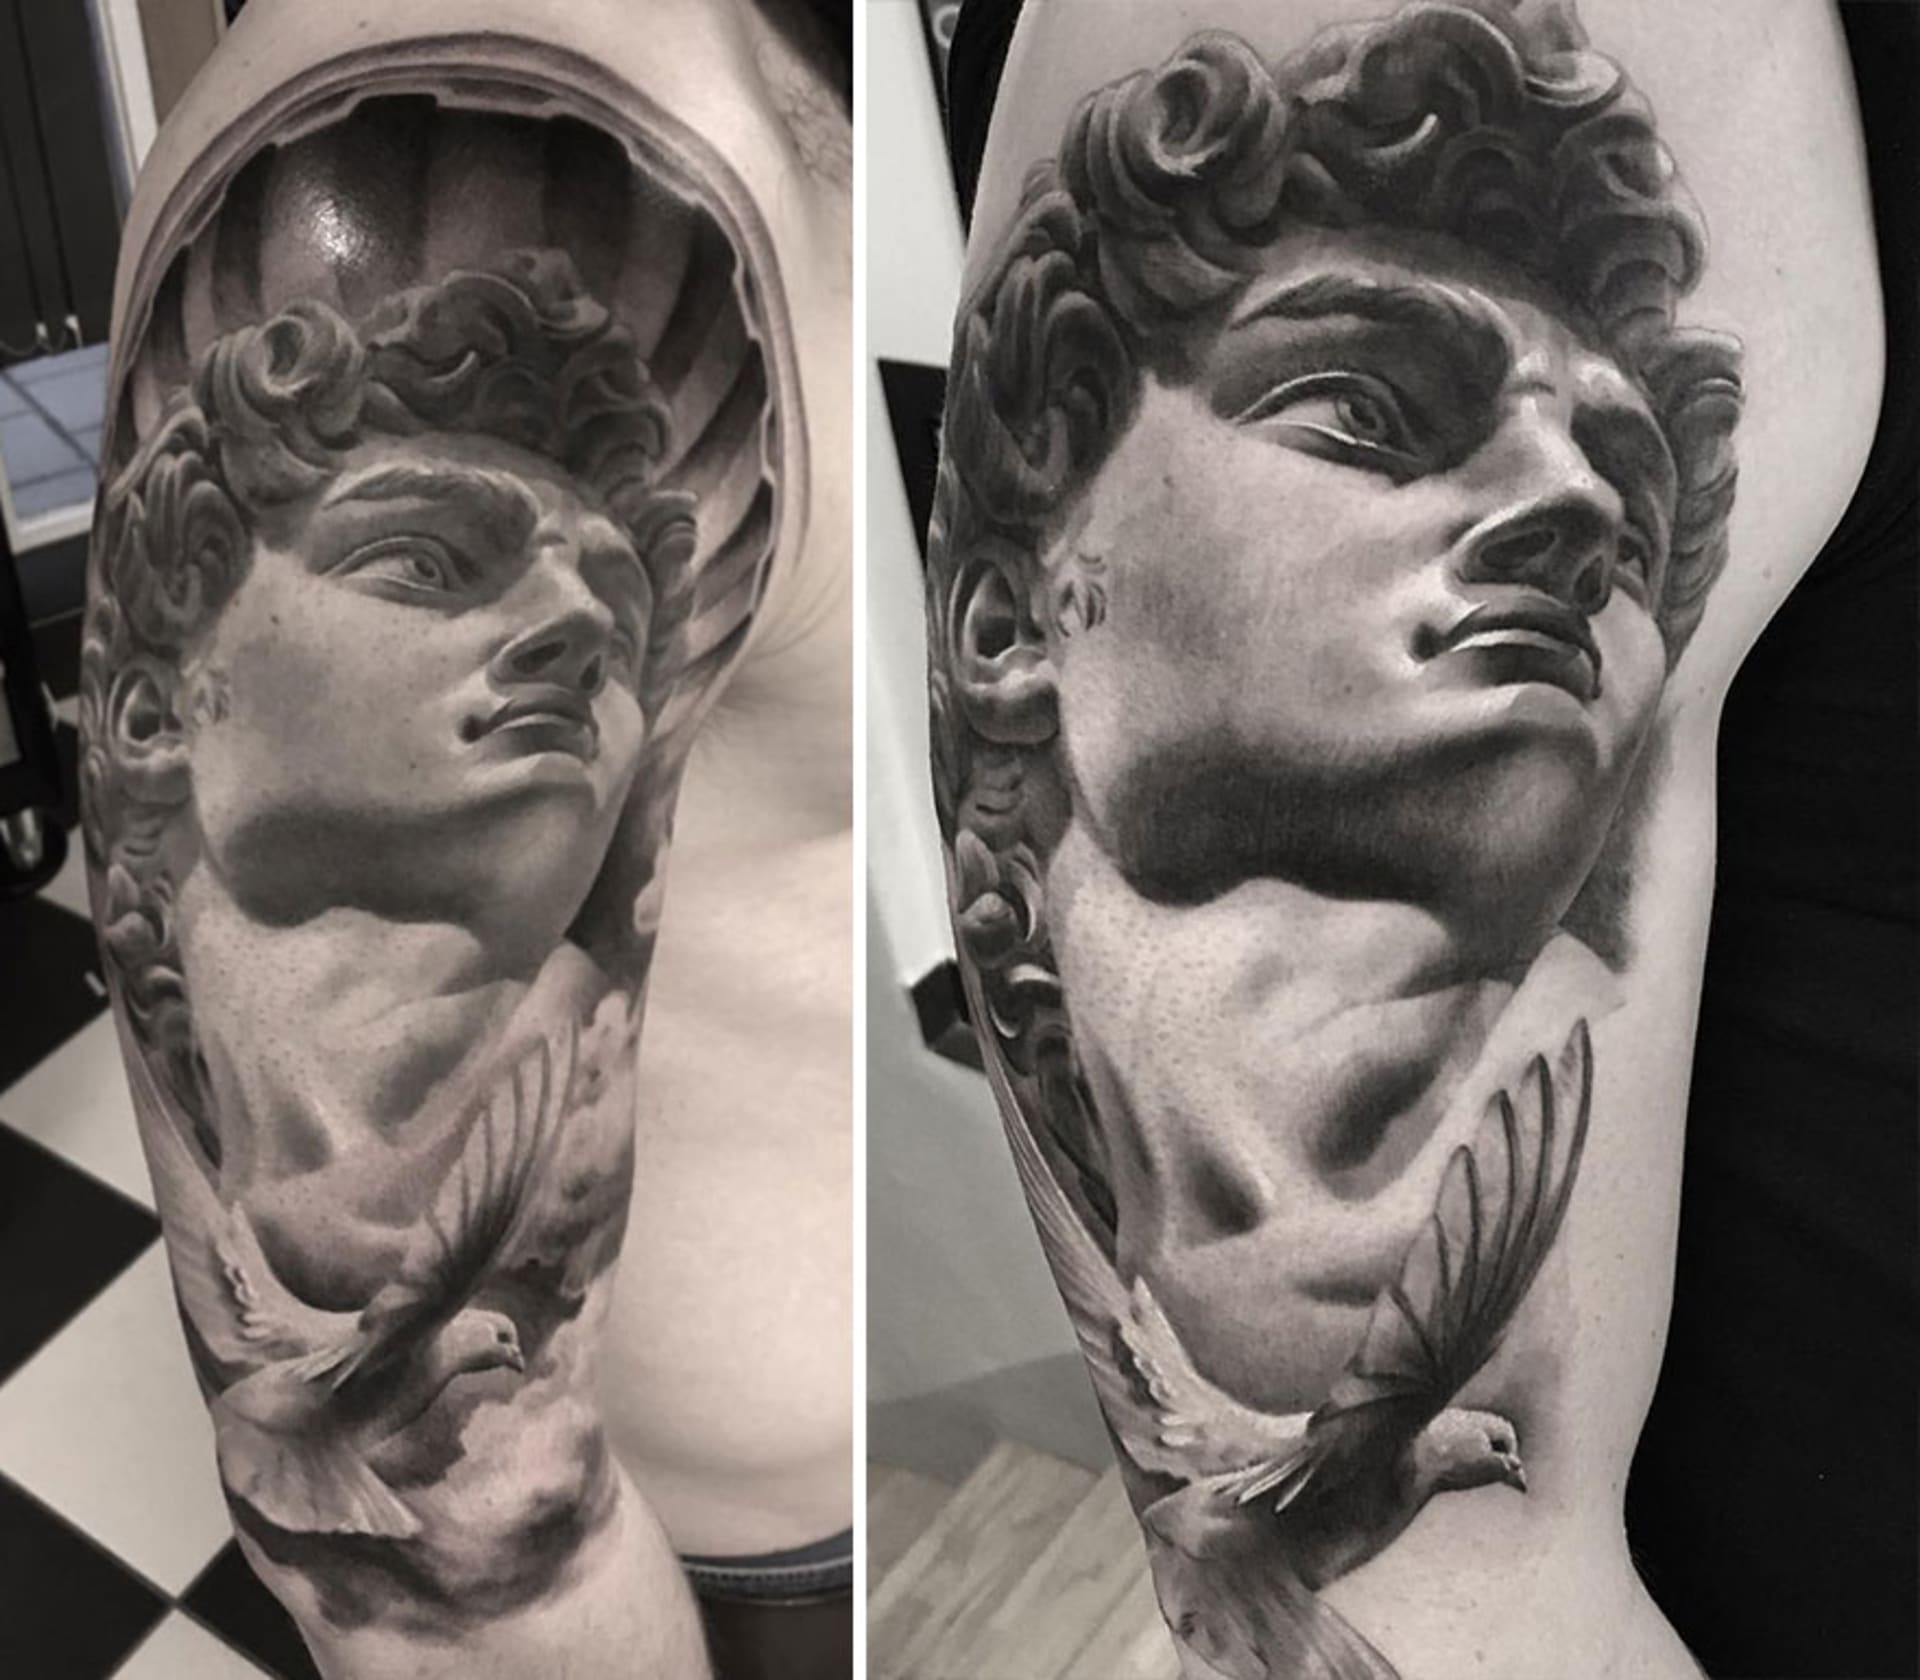 Tetování, nebo umělecké dílo?